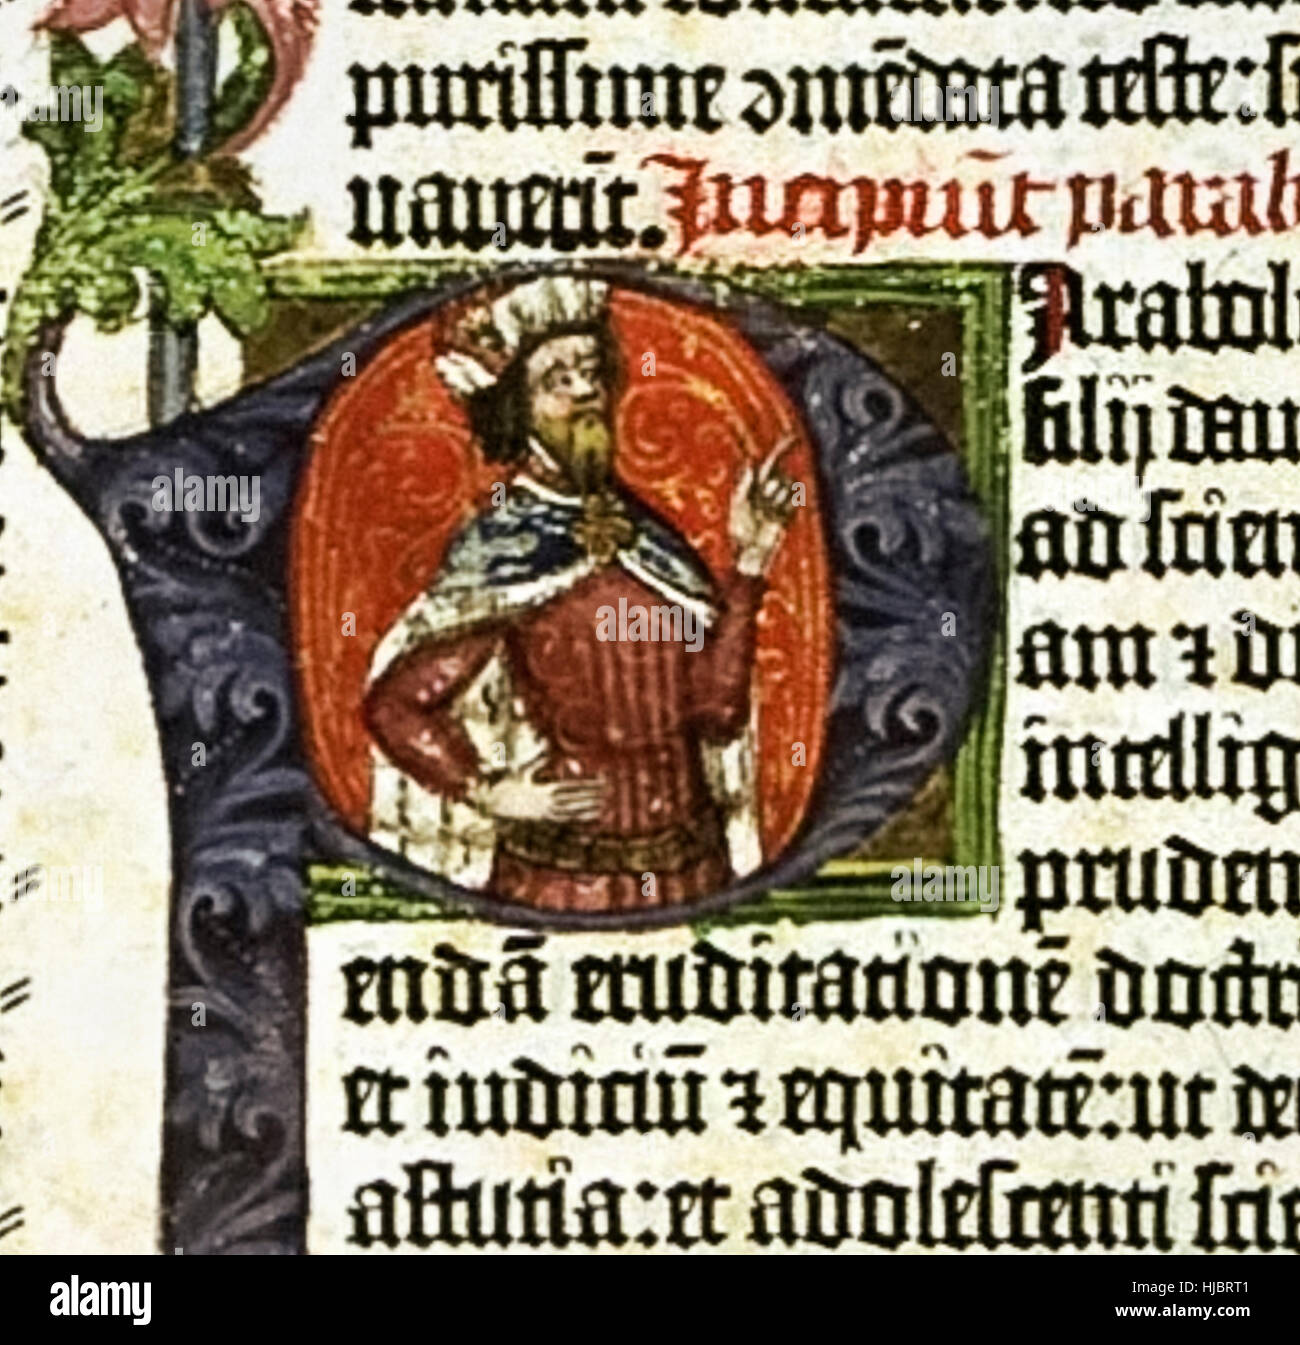 Beleuchtete Porträt von König Solomon von den Buchstaben "P" aus der "Gutenberg-Bibel" das erste massenproduzierte Buch gedruckt von Johann Gutenberg 1455 in Mainz, Deutschland. Siehe Beschreibung für mehr Informationen. Stockfoto